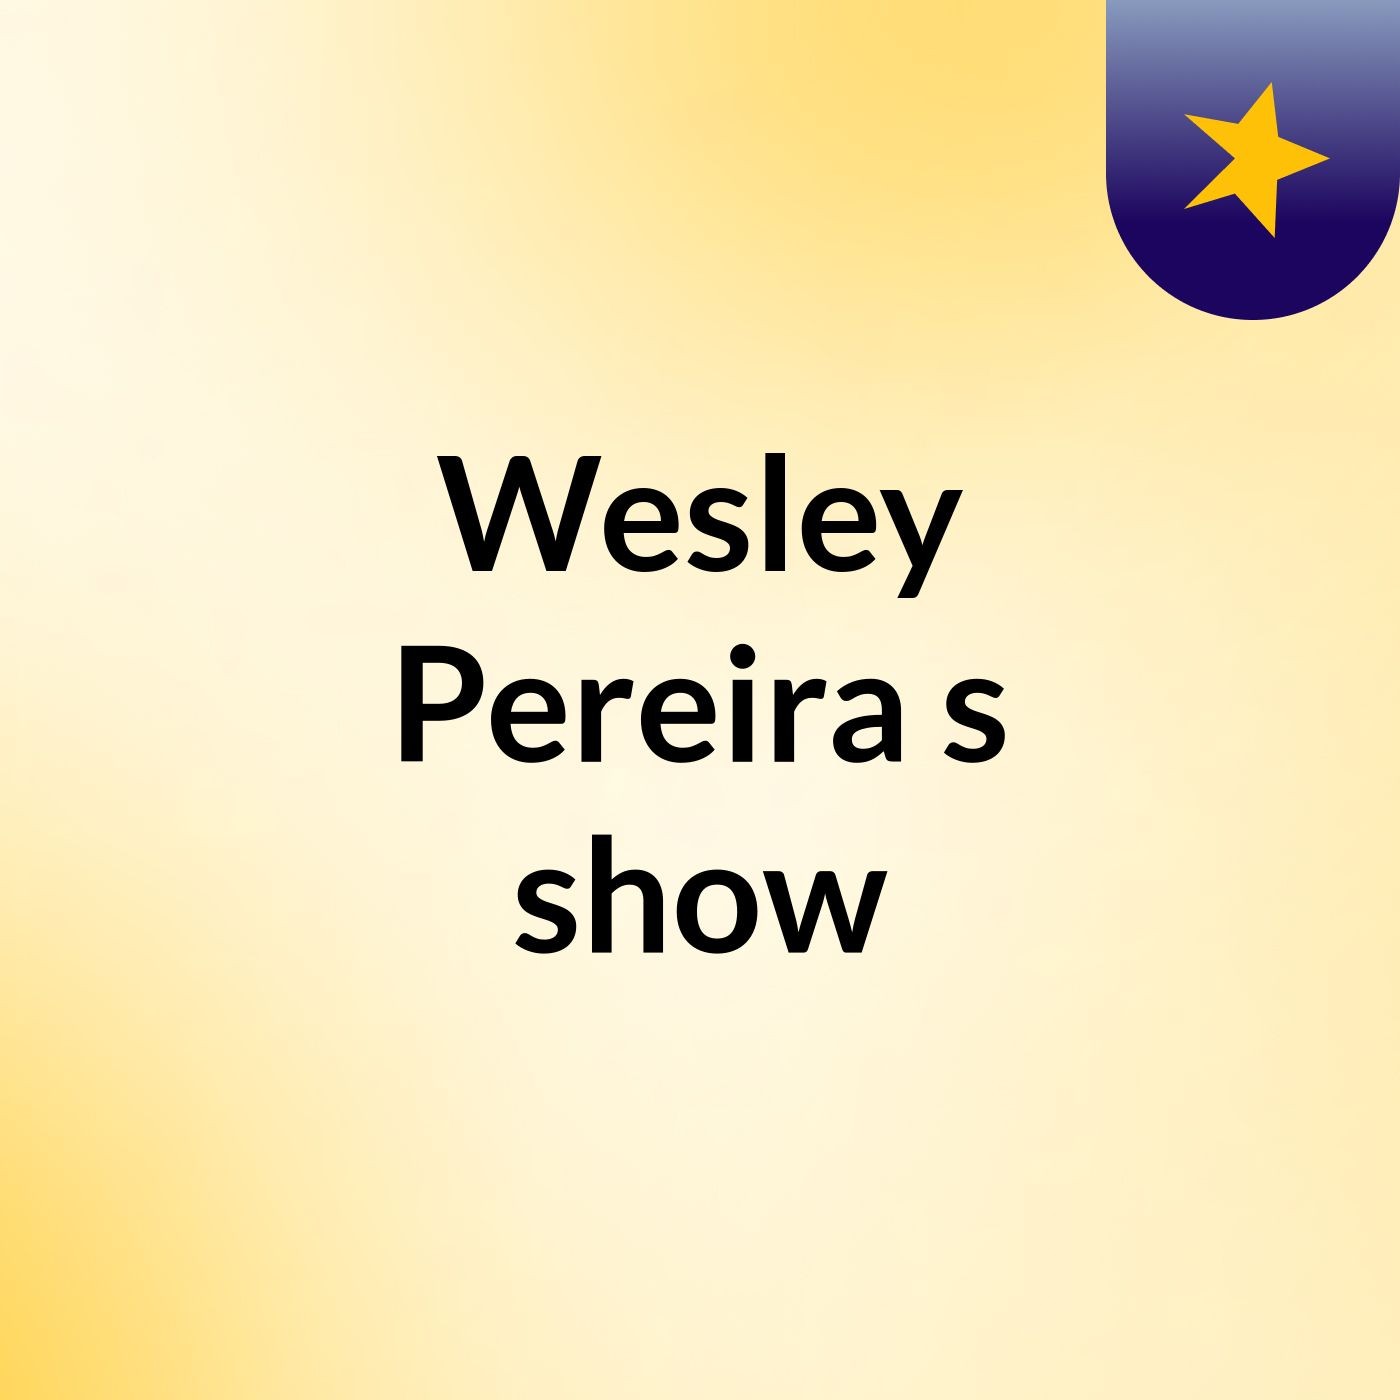 Wesley Pereira's show